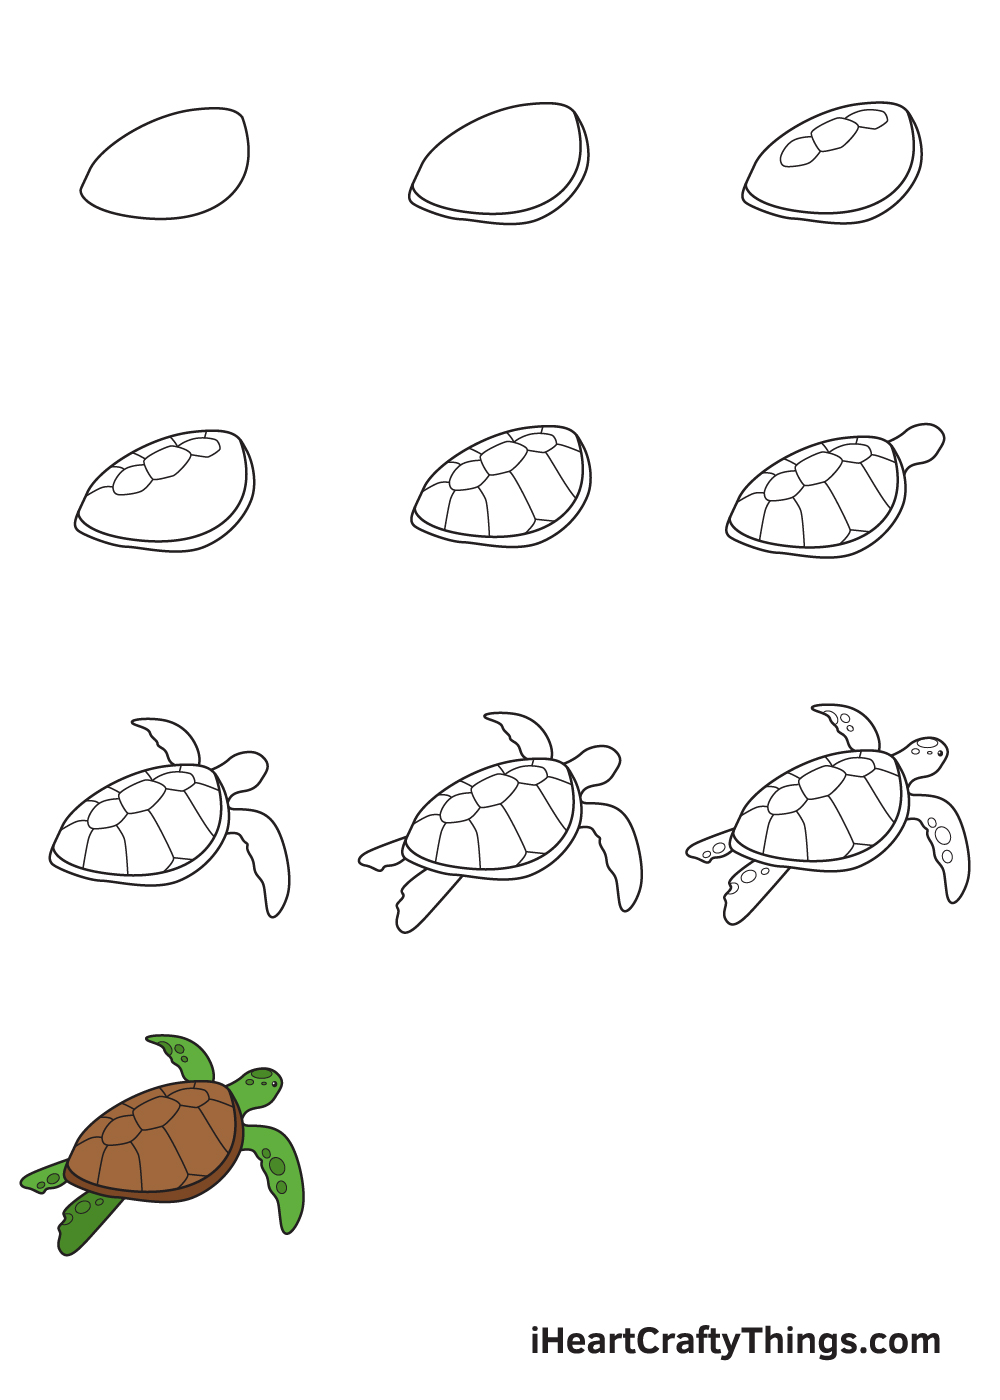 Drawing Sea Turtle in 10 Easy Steps - Hướng dẫn chi tiết cách vẽ con rùa từng bước